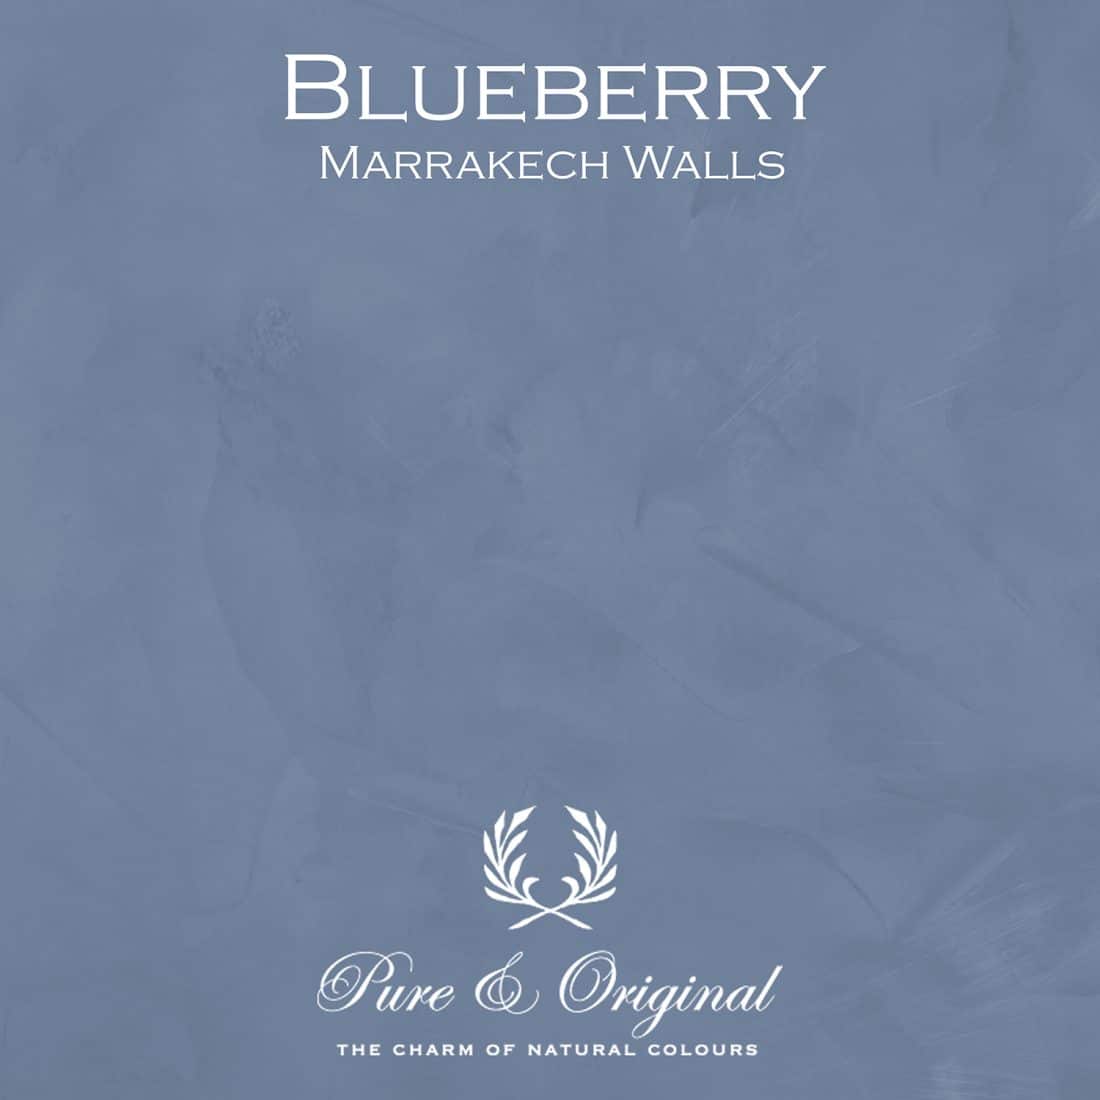 Blueberry Marrakech Walls